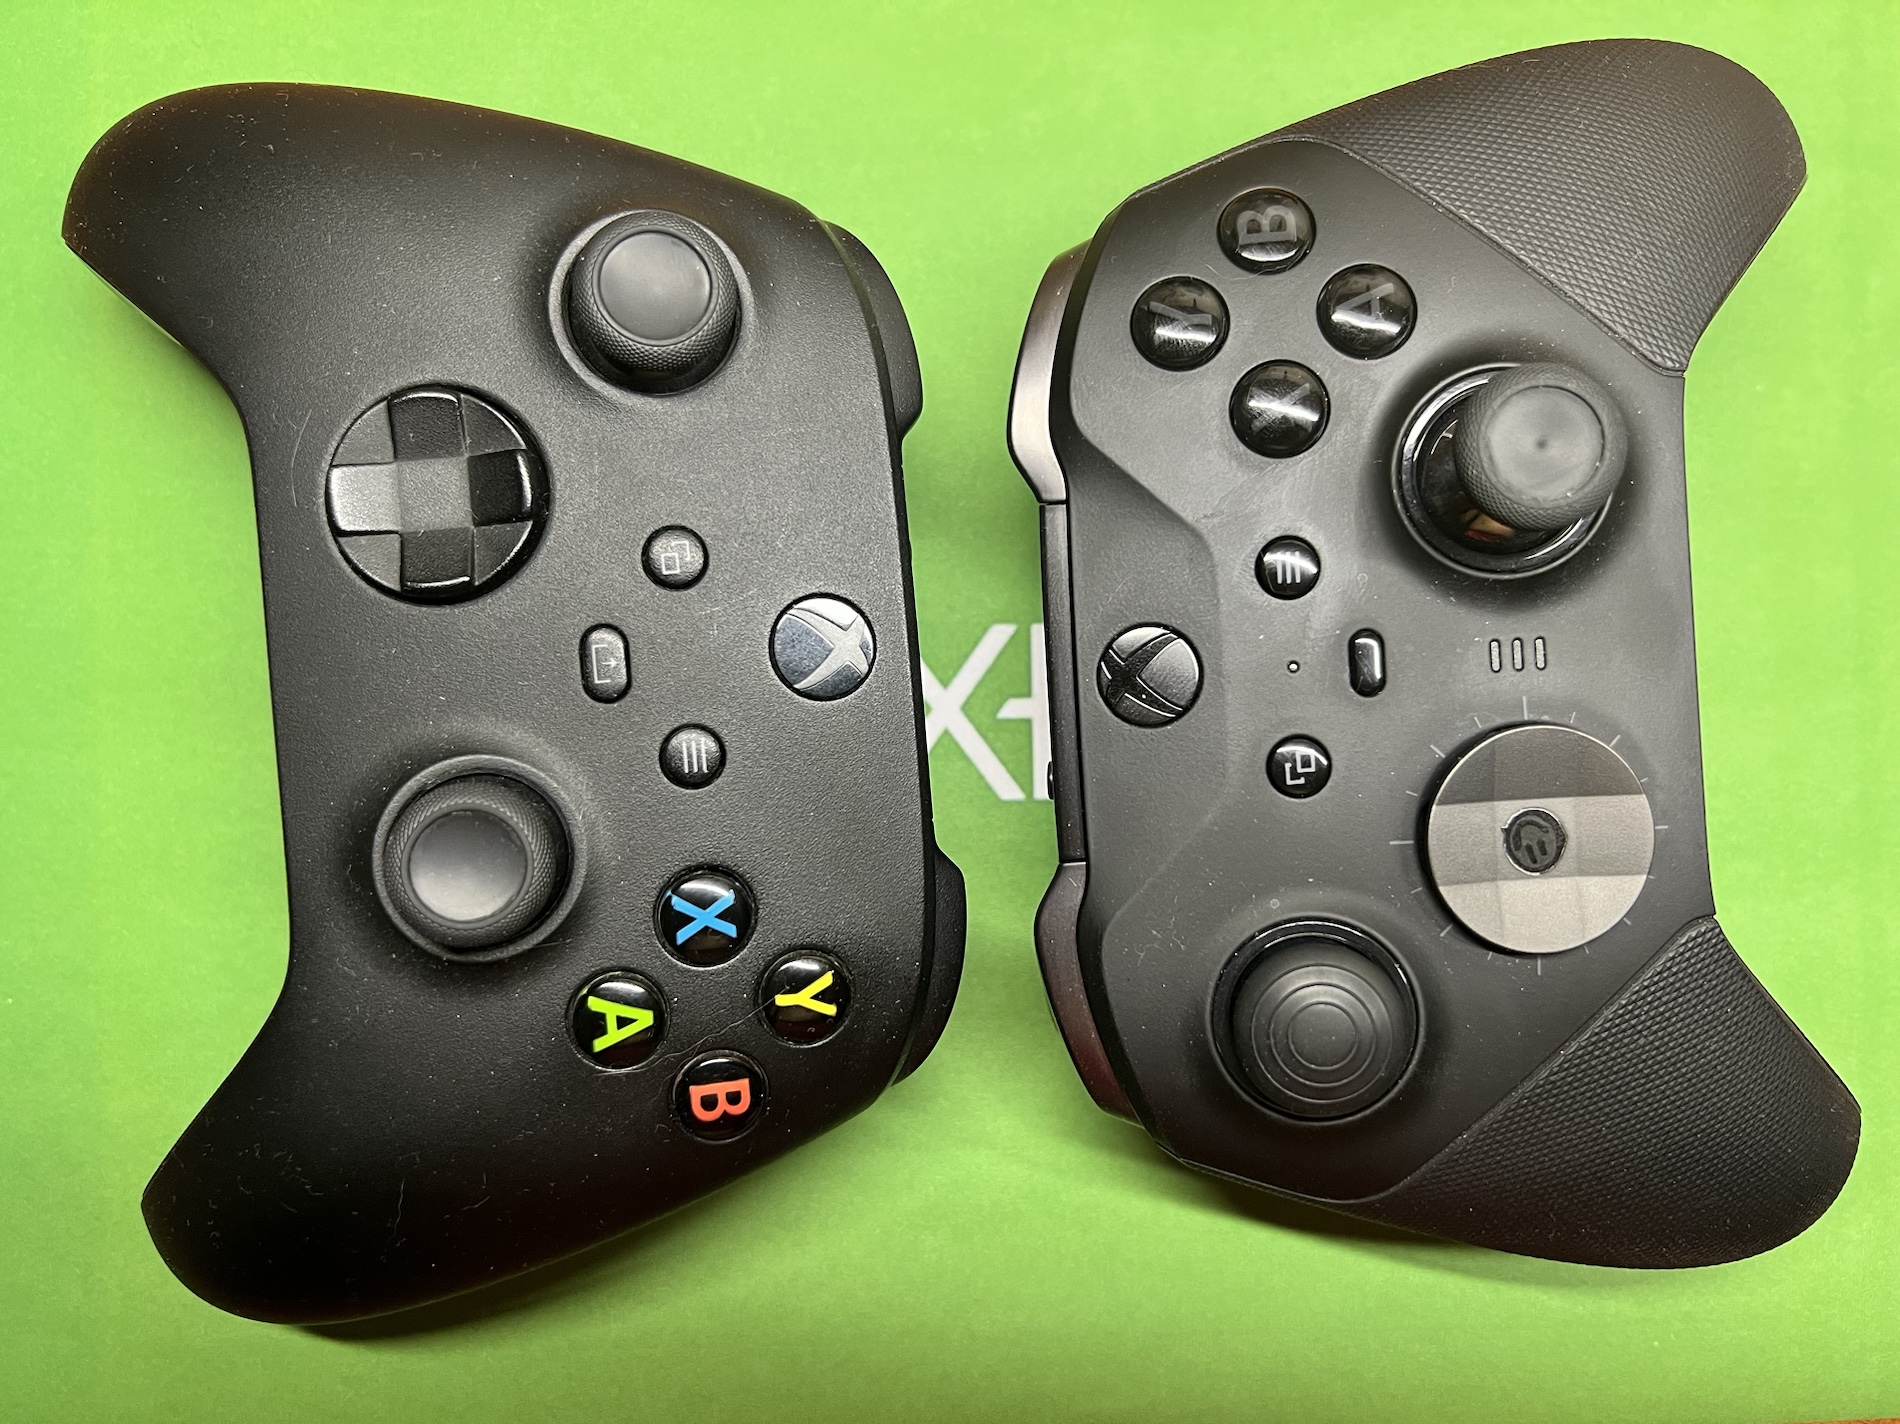 Xbox controller vs Elite controller 2